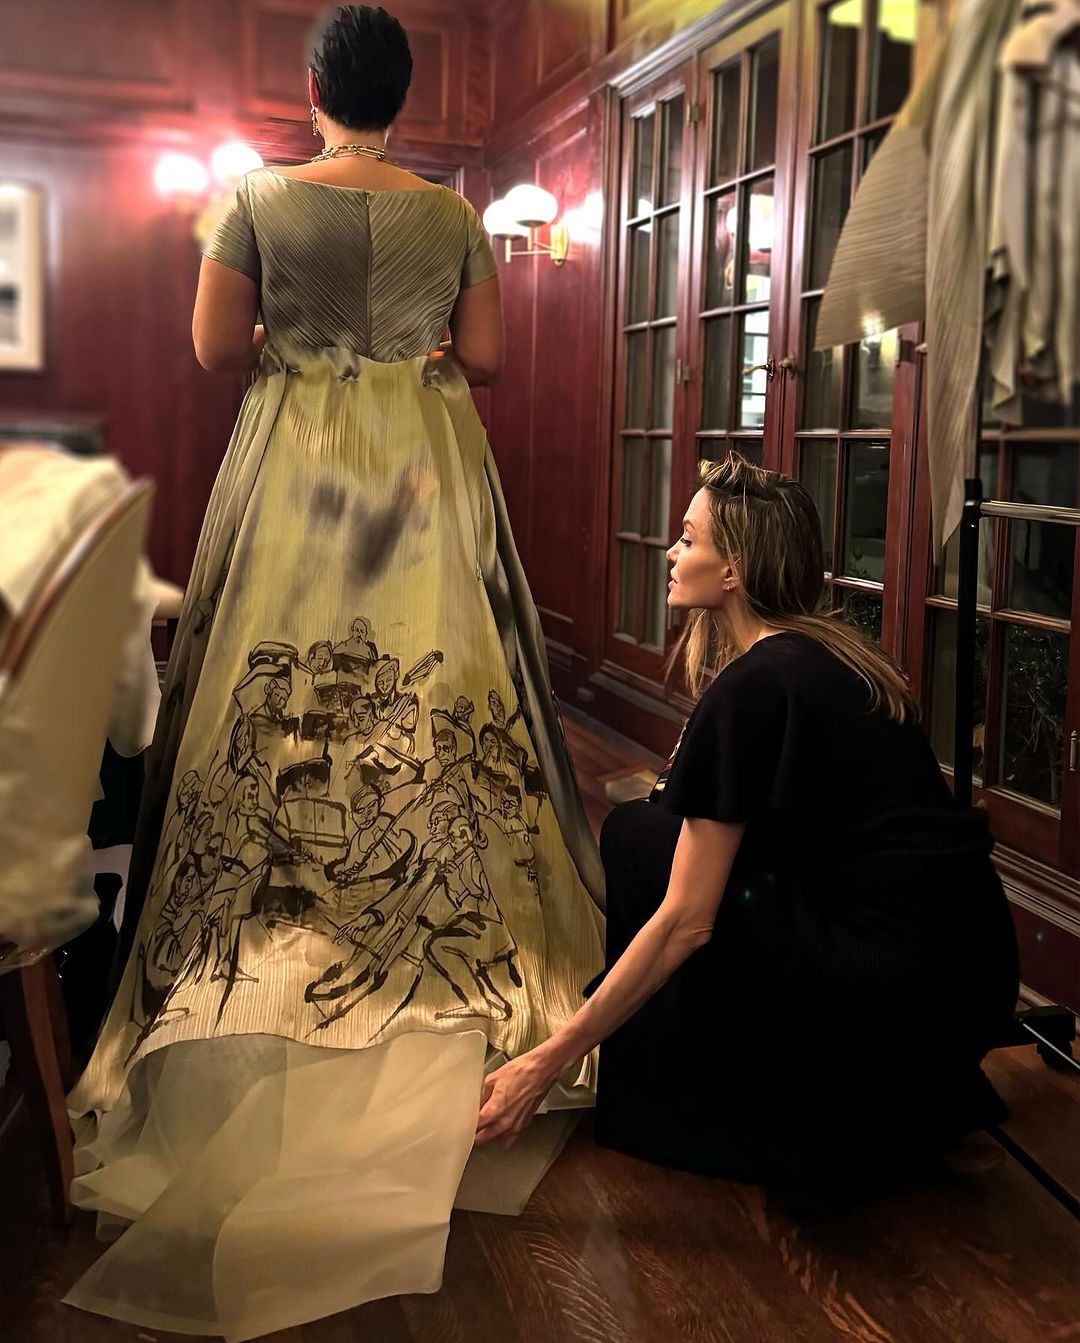 Анджелина Джоли создала авторское платье для писательницы Сулейки Жауад